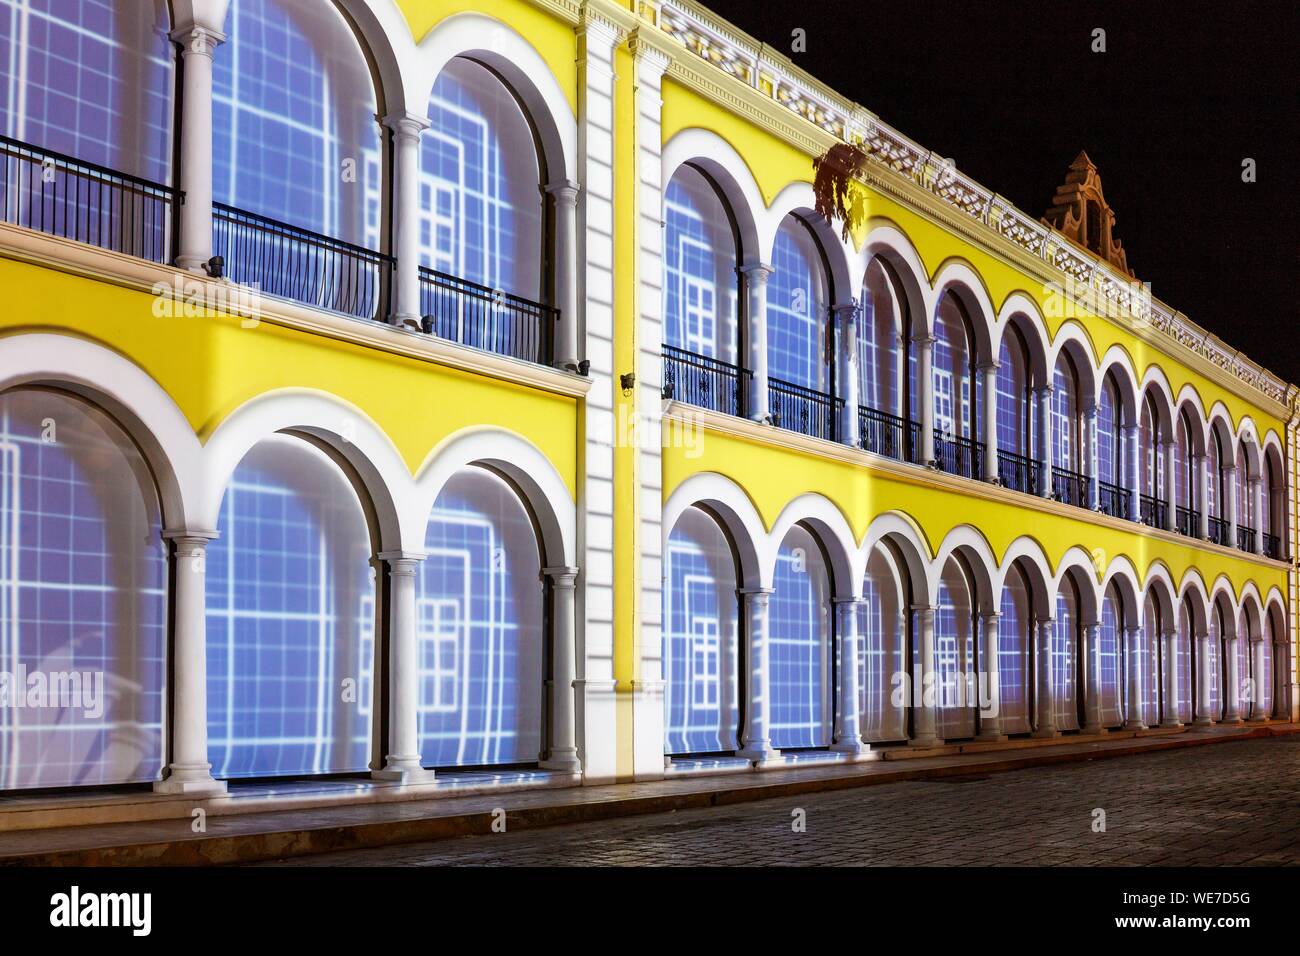 Le Mexique, l'État de Campeche, Campeche, ville fortifiée inscrite au Patrimoine Mondial de l'UNESCO, l'hôtel de ville façade de nuit Banque D'Images